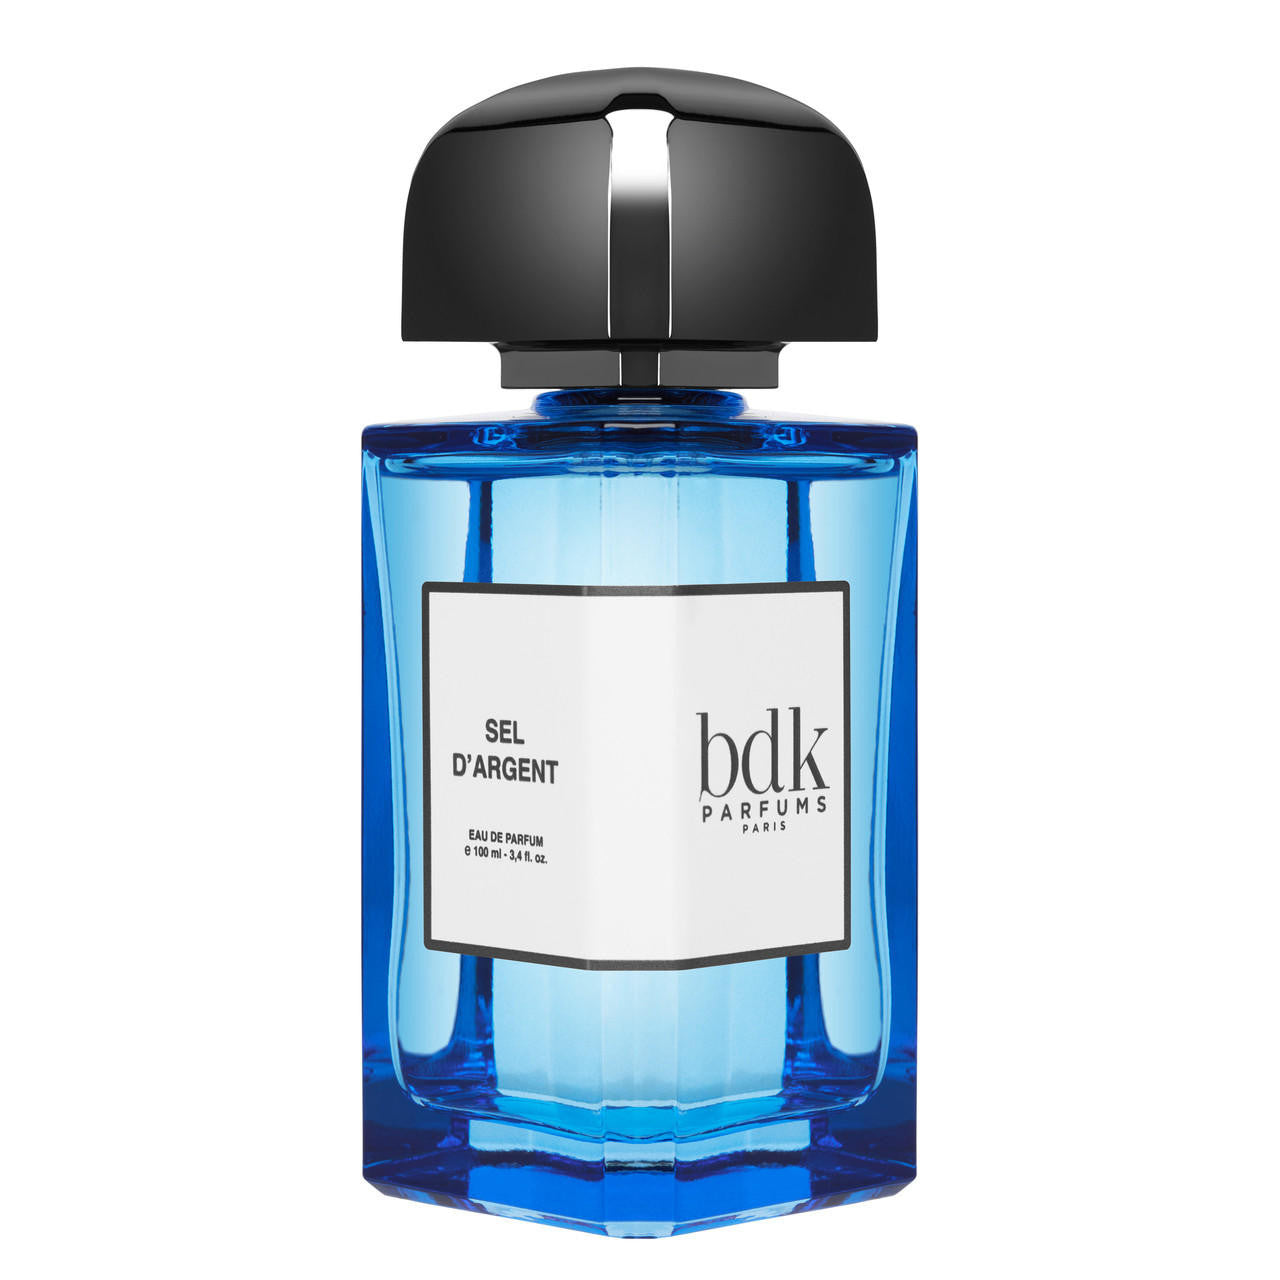  BDK Parfums SEL D'ARGENT Eau de Parfum 